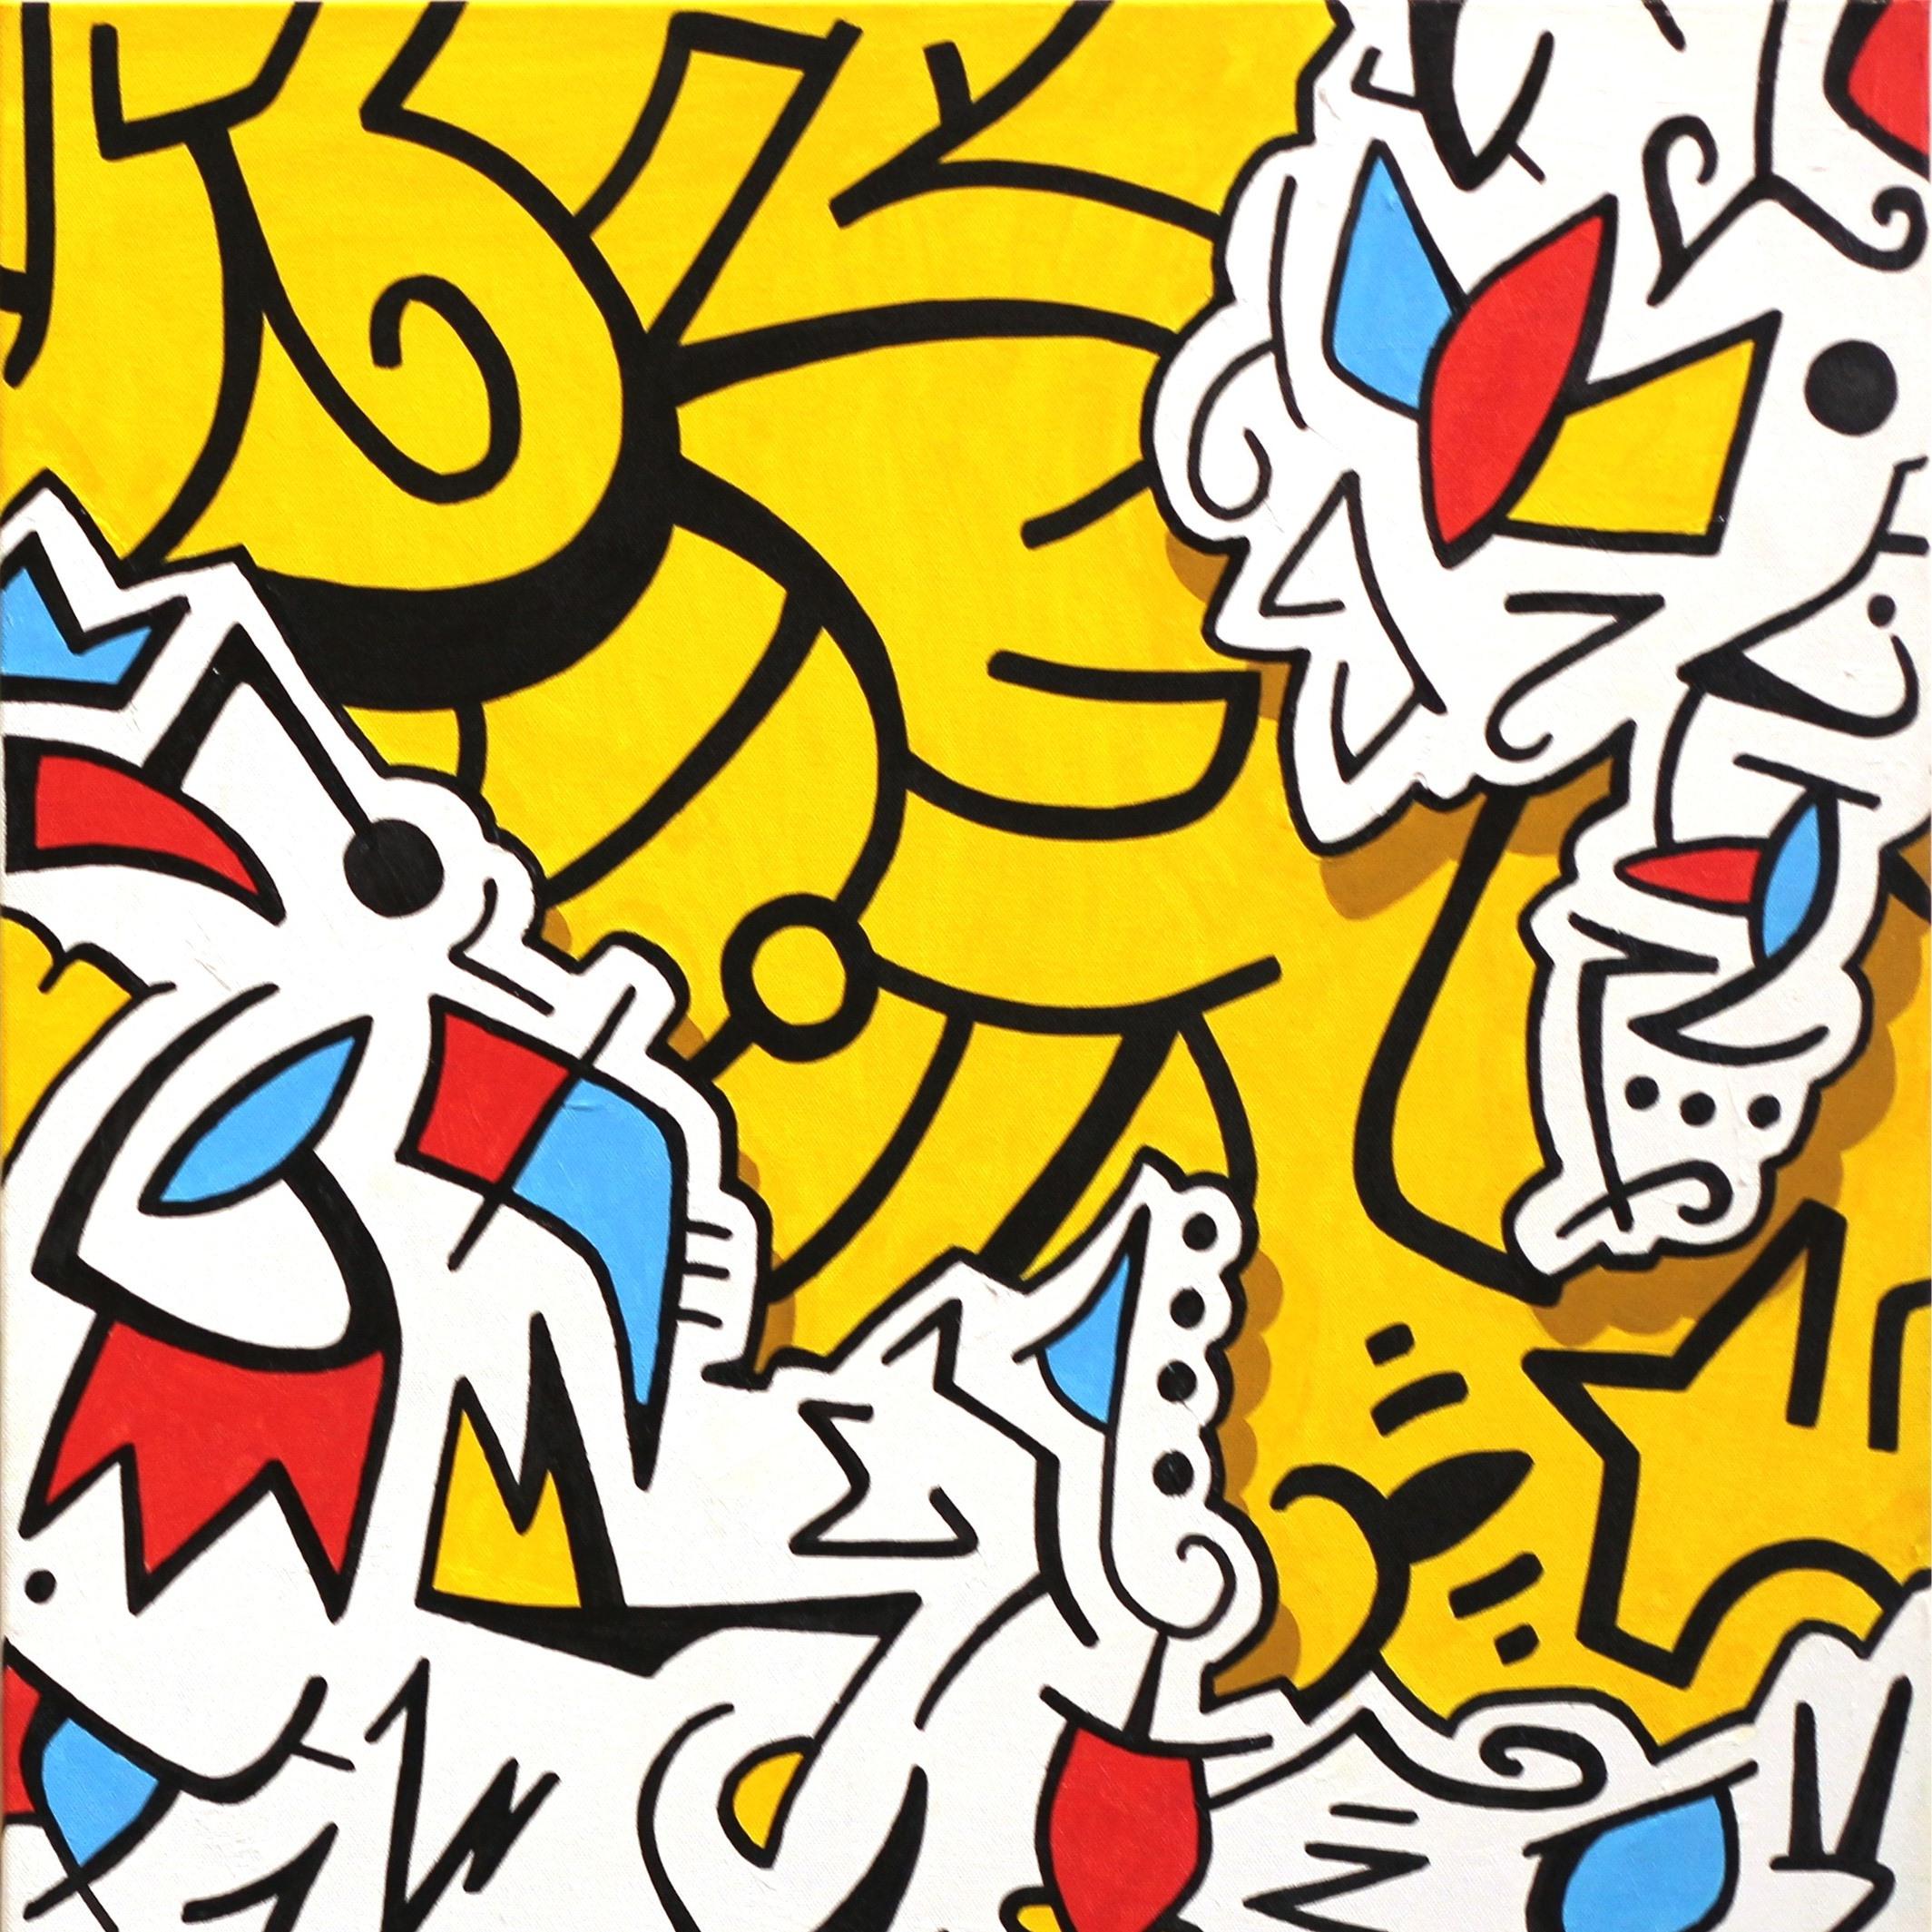 Ilan Leas verwendet graffitiähnliche Striche und kühne Winkel, die in seinen Zeichnungen zu einem faszinierenden Gleichgewicht des organisierten Chaos zusammenlaufen. Mit seinem einzigartigen künstlerischen Ansatz lässt sich Leas von seinem